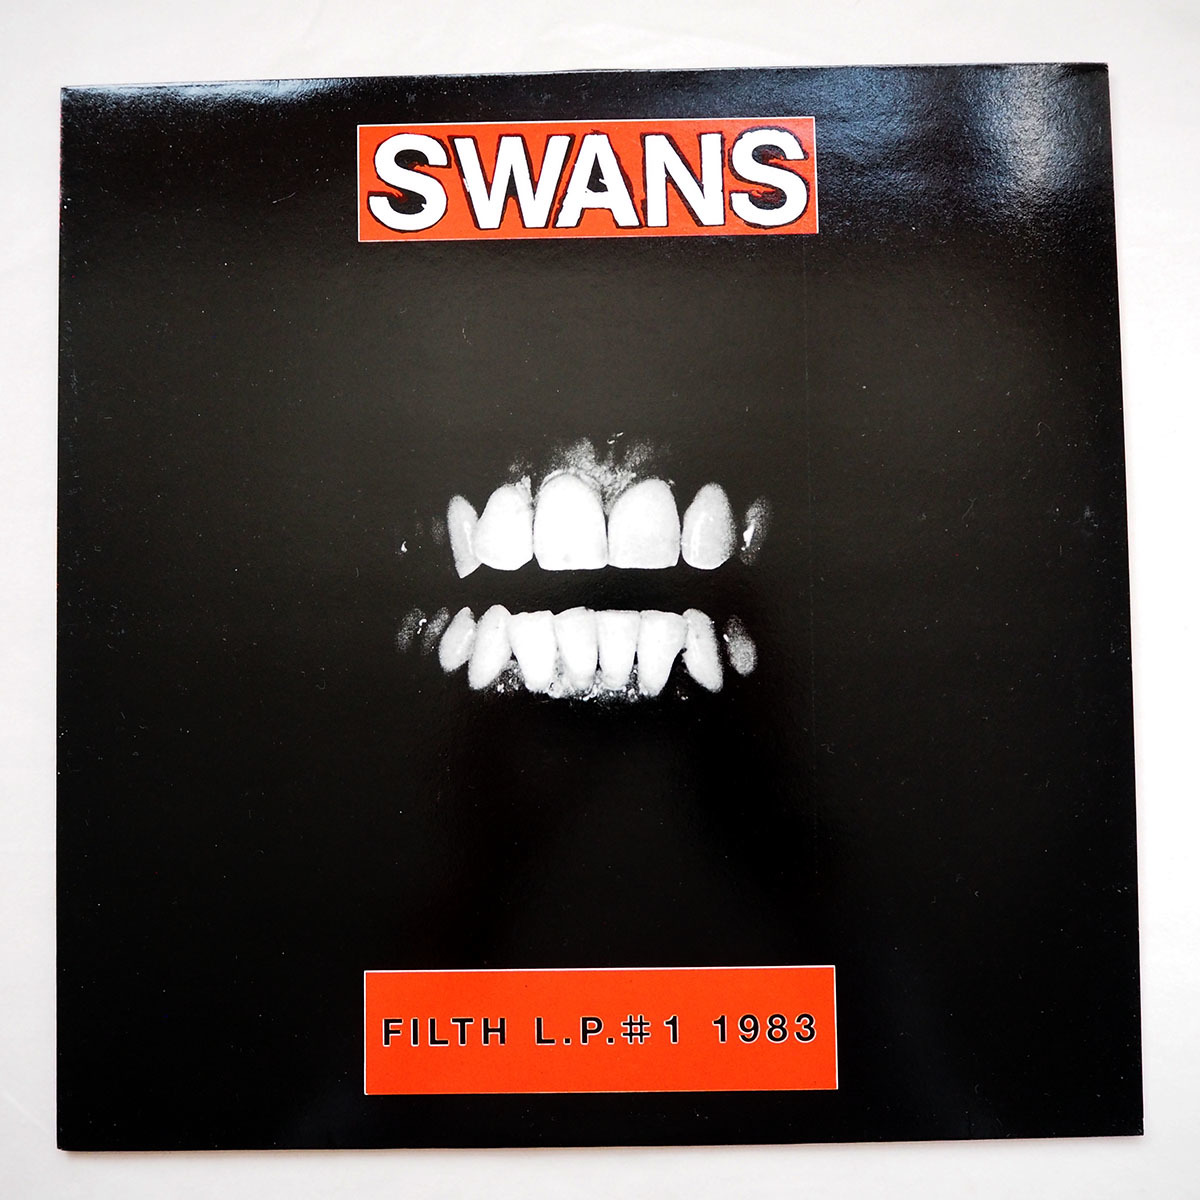 ◆ SWANS / Filth L.P. # 1 1983 ピンクカラー盤 送料無料 ◆_画像2